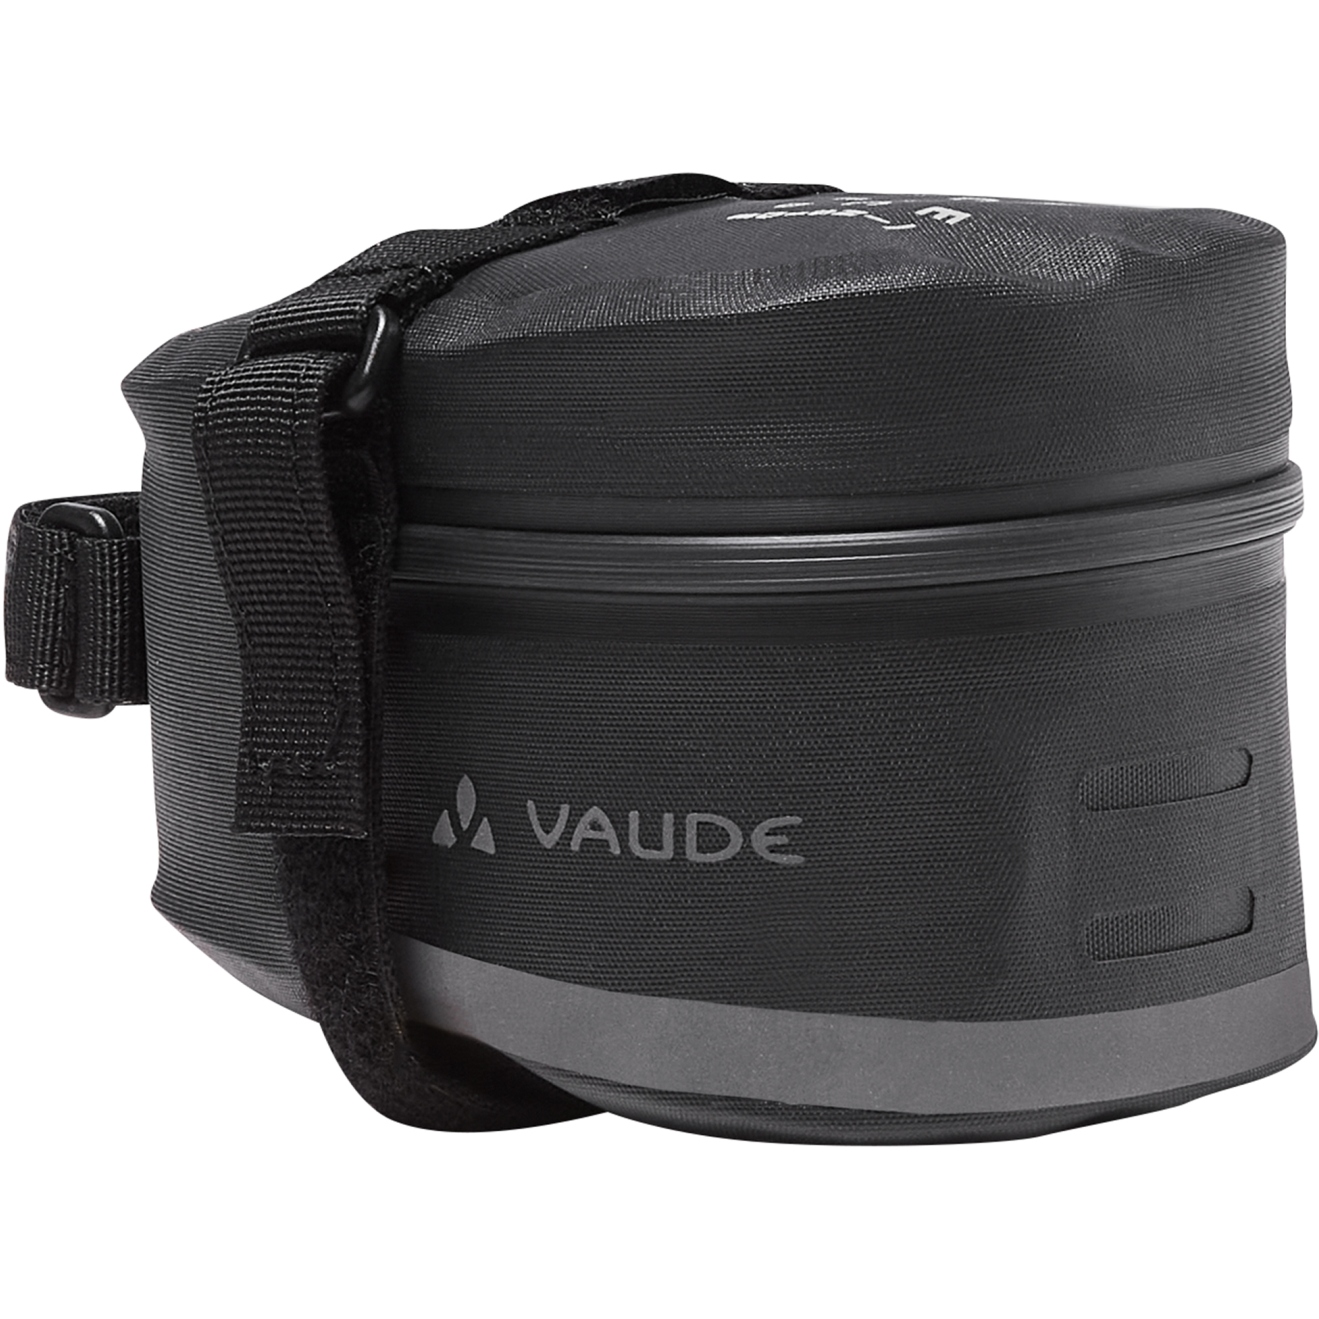 Produktbild von Vaude Tool Aqua L Satteltasche - 1.3L - schwarz